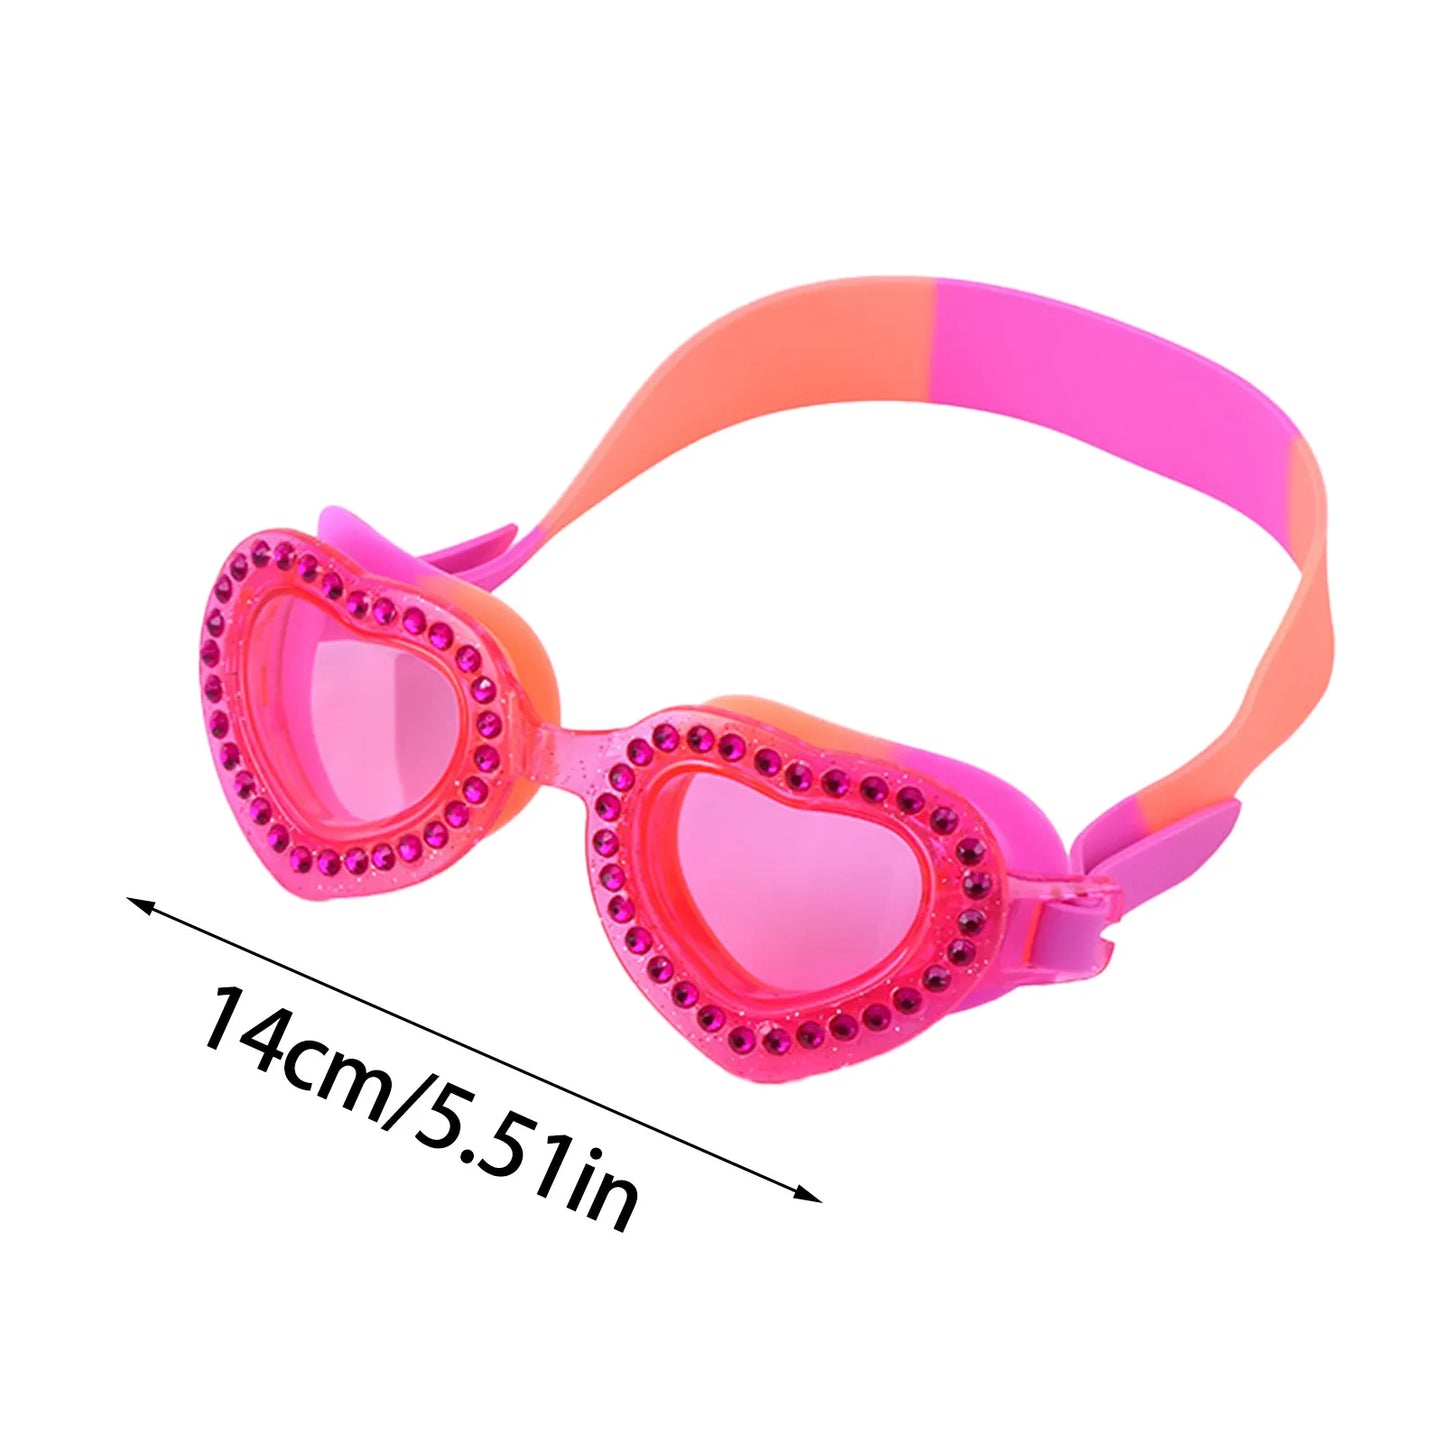 Children's Swimming Goggles Pink Diamonte Hearts *